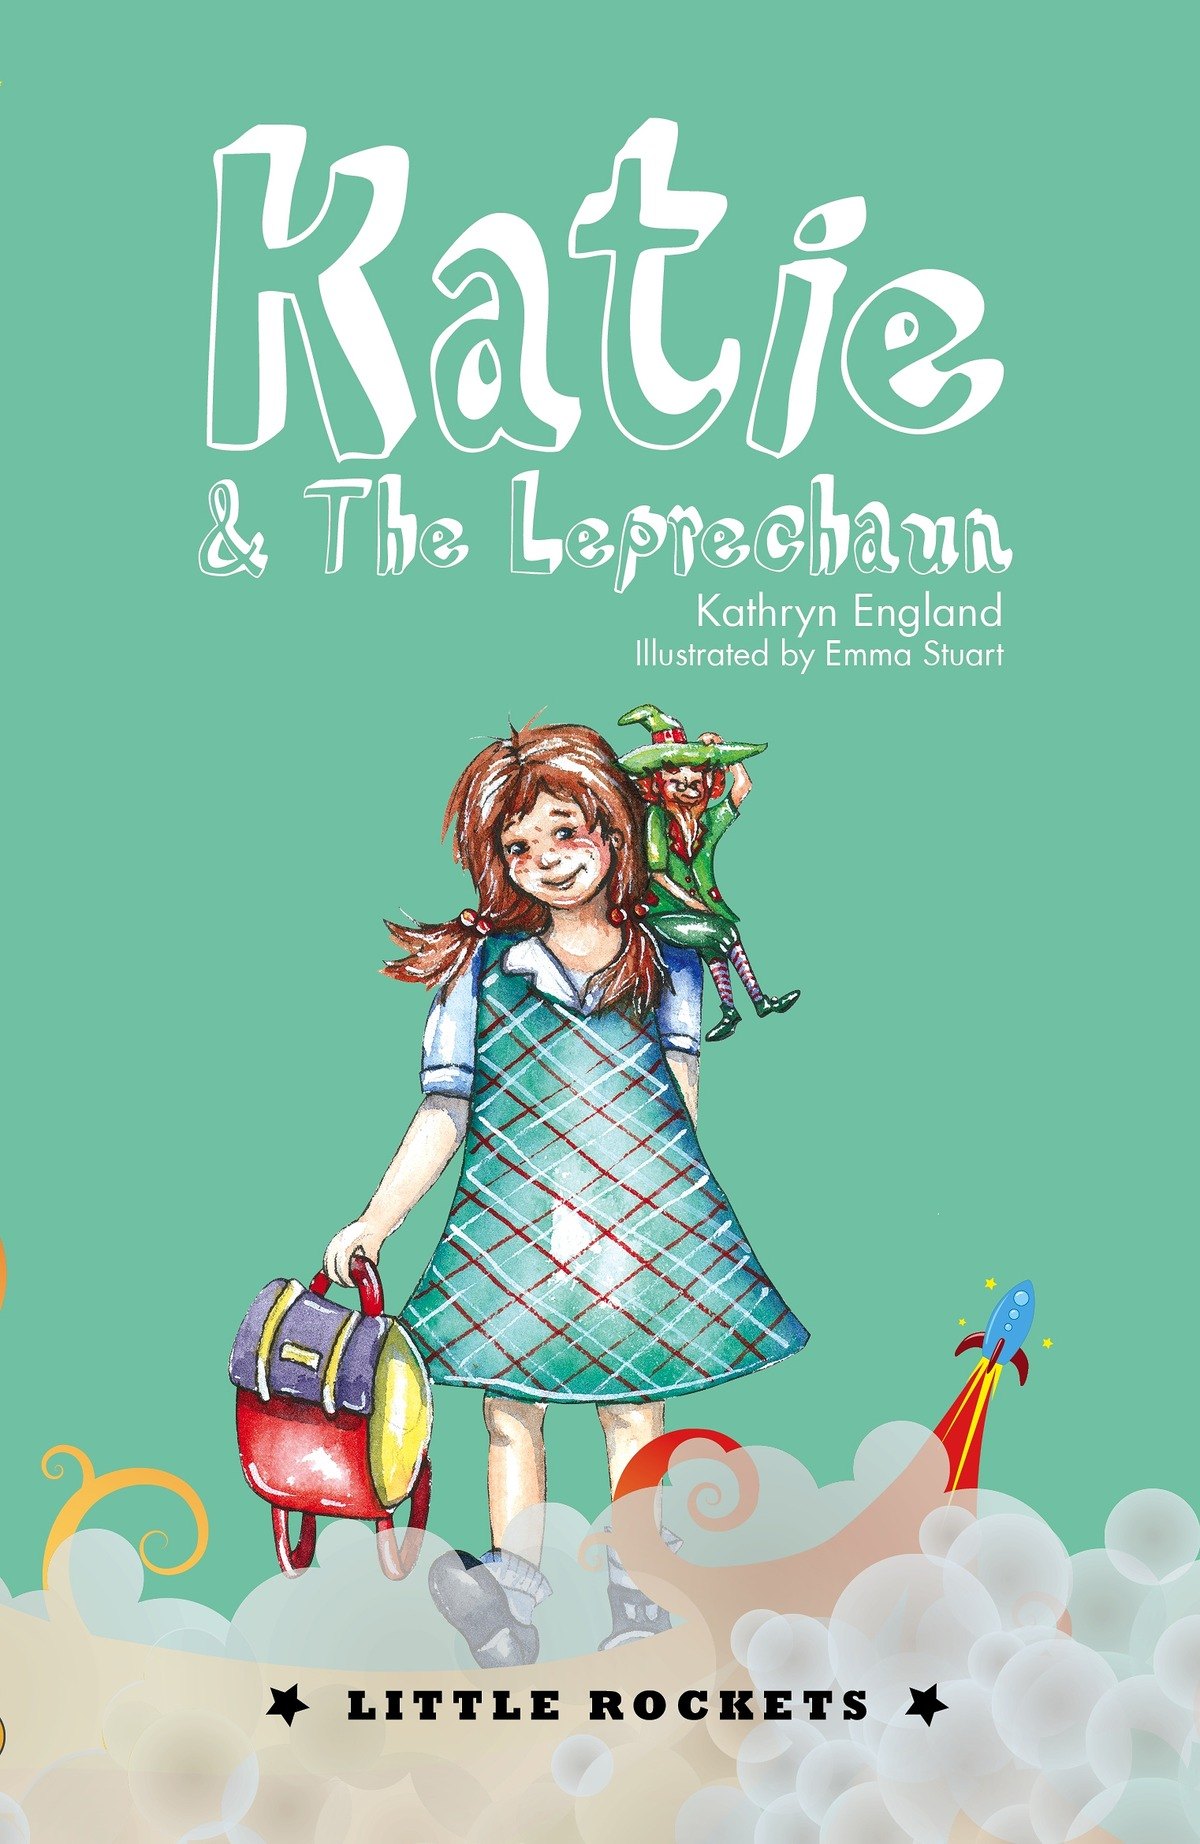 Katie and The Leprechaun